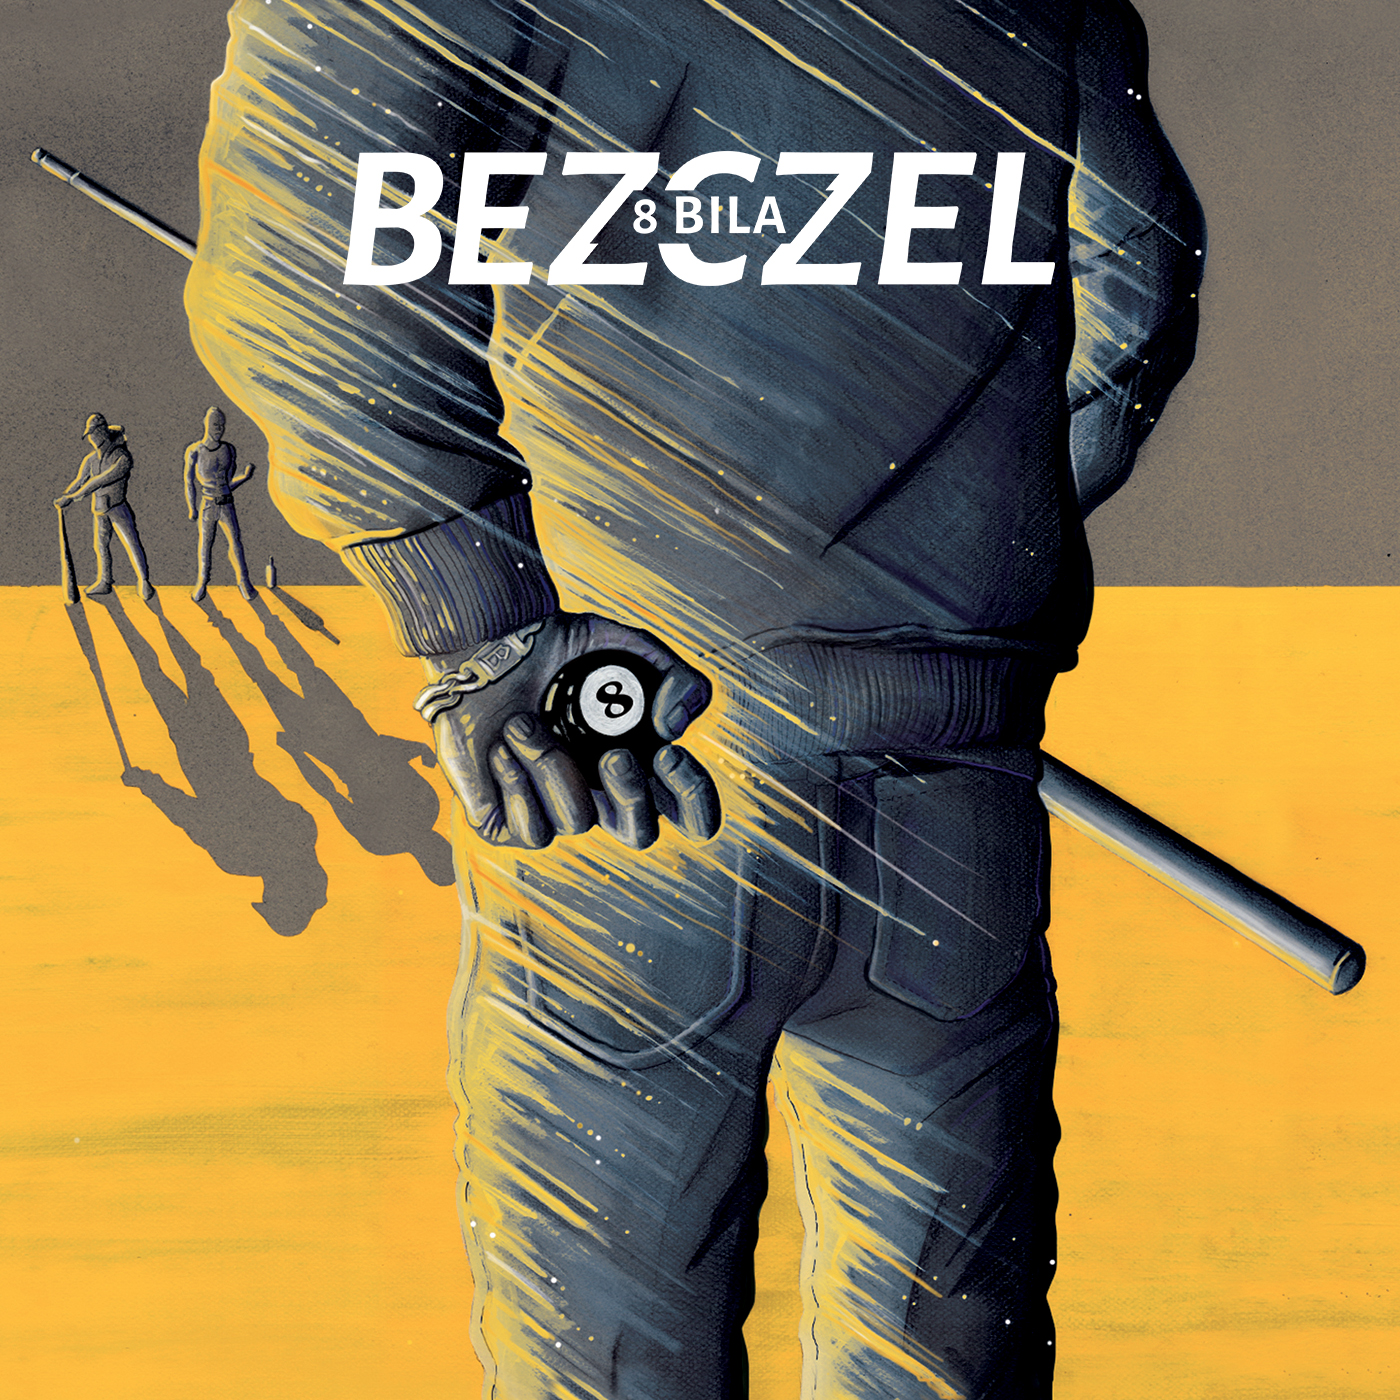 8 Bila || Premiera nowego albumu Bezczela!